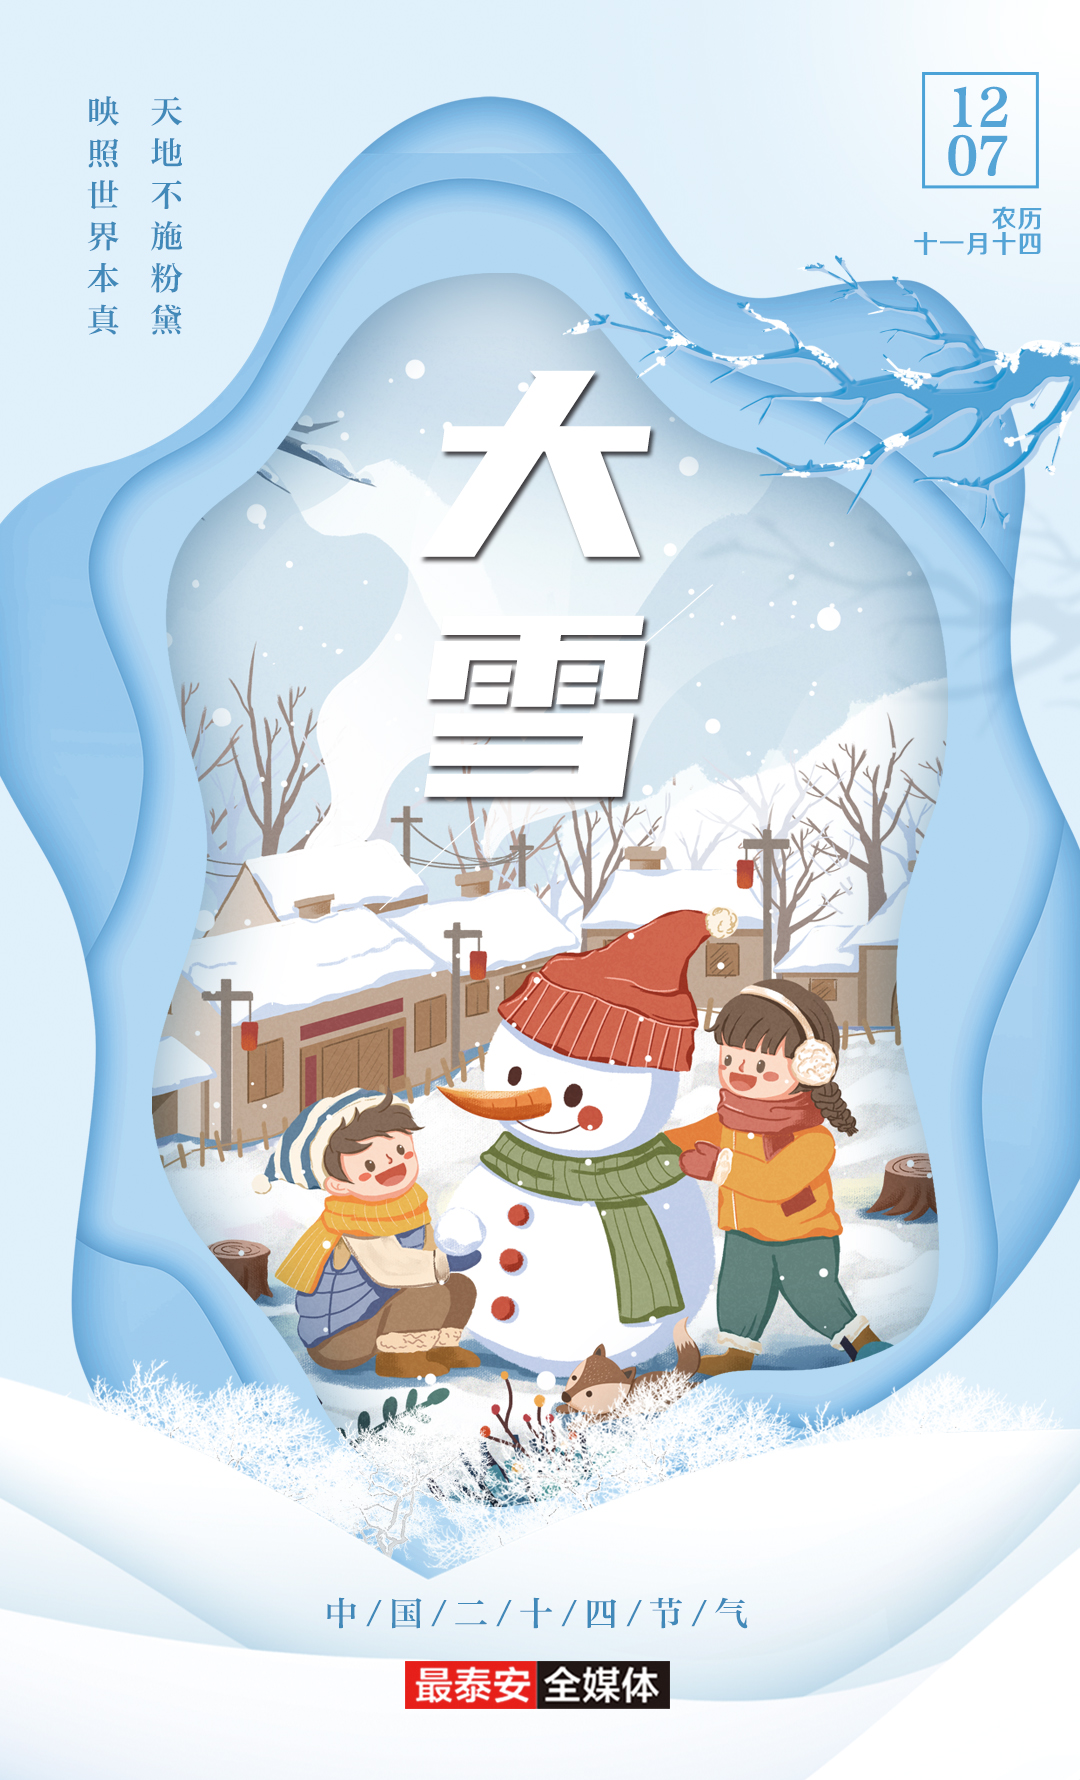 12月7日迎大雪节气 未来几天泰安天气保持晴朗